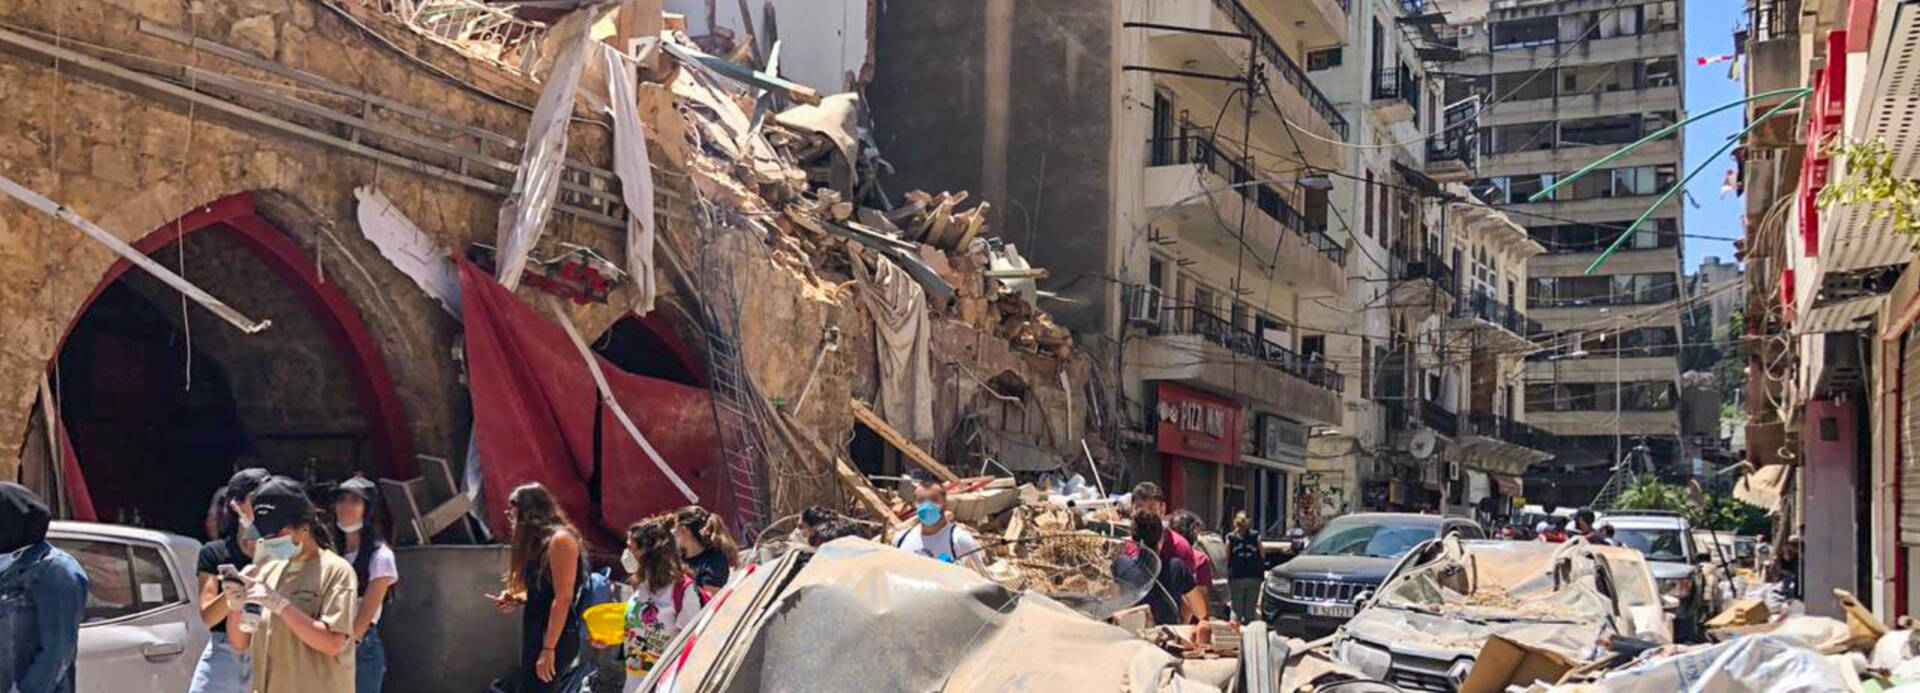 Zerstörte Häuser in Beirut nach Explosion